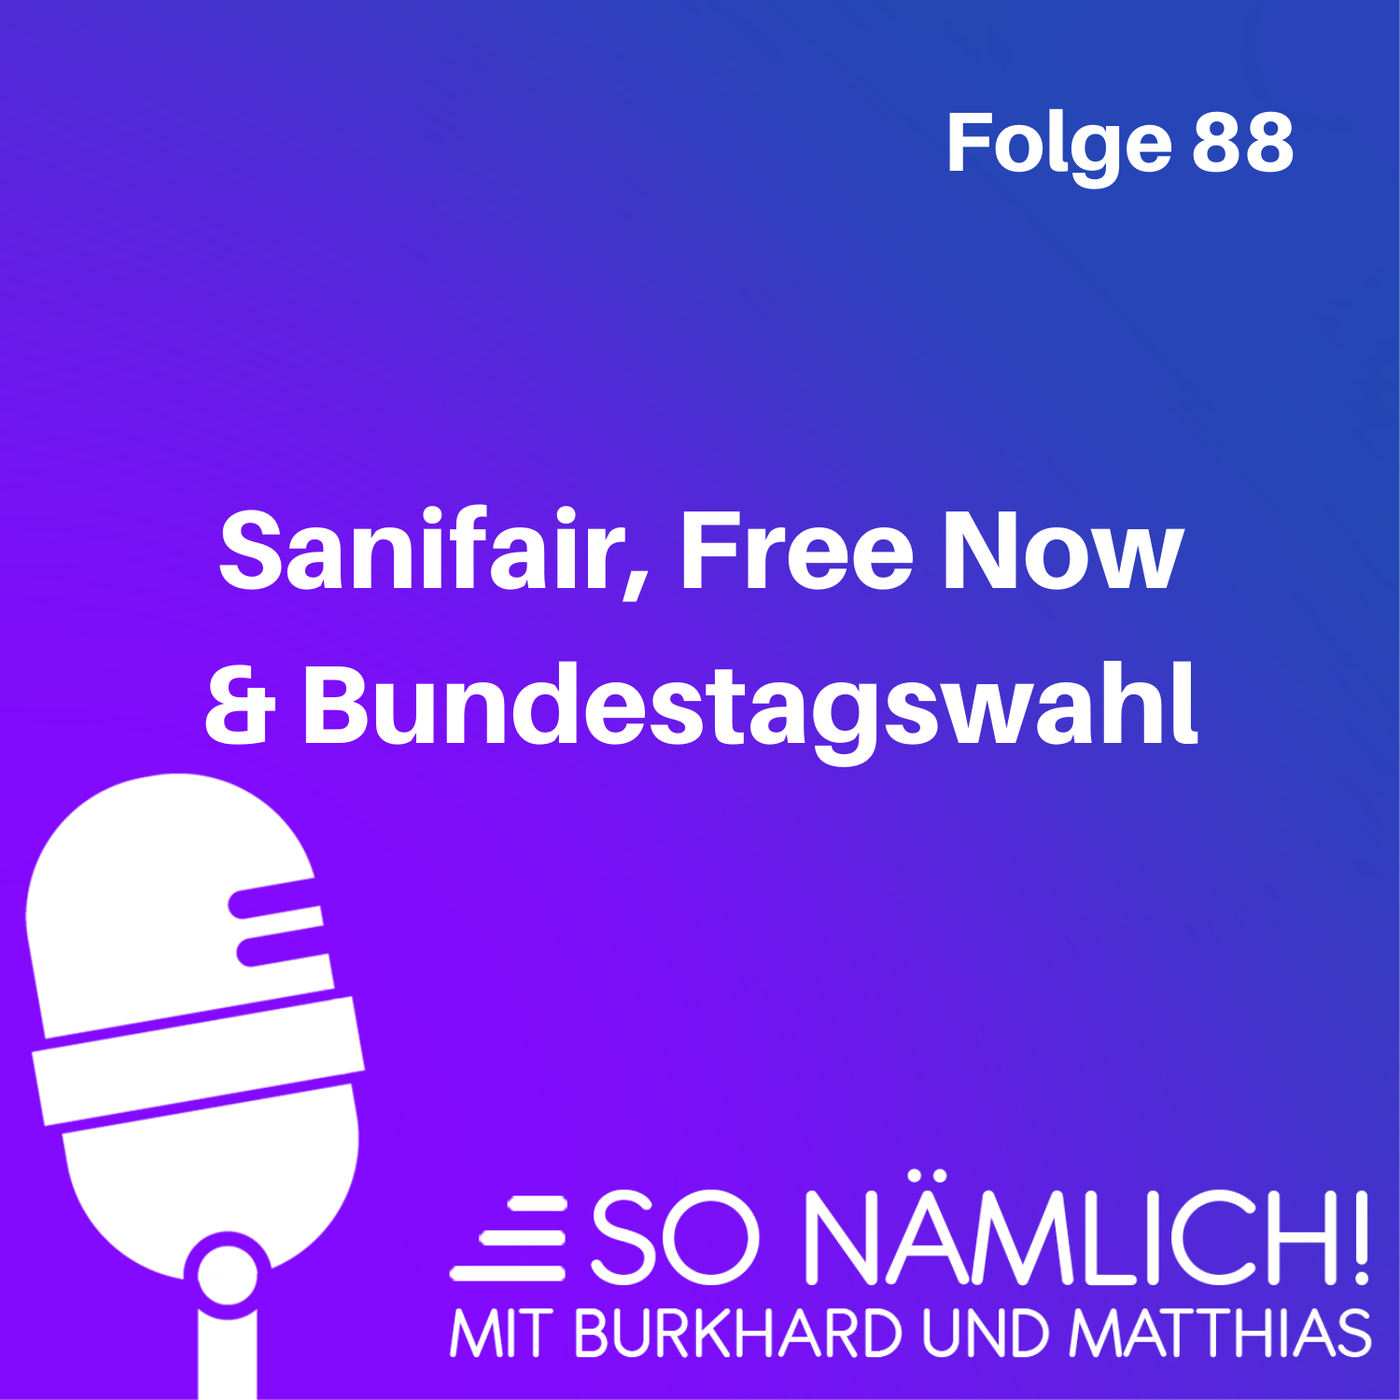 Sanifair, Free Now & Bundestagswahl